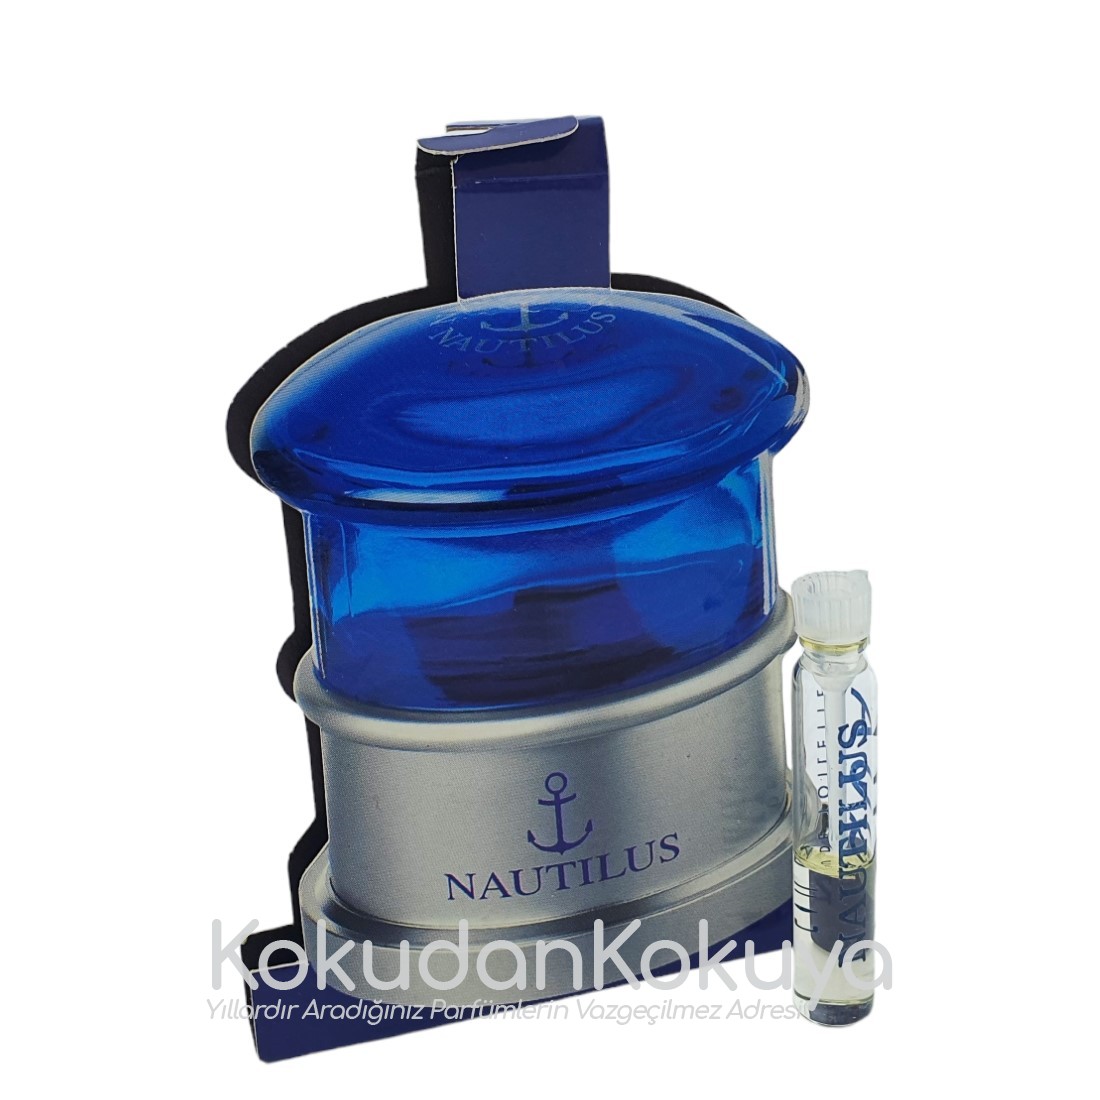 NAUTILUS Aqua Nautilus (Vintage) Parfüm Erkek 1.5ml Eau De Toilette (EDT) Dökme 